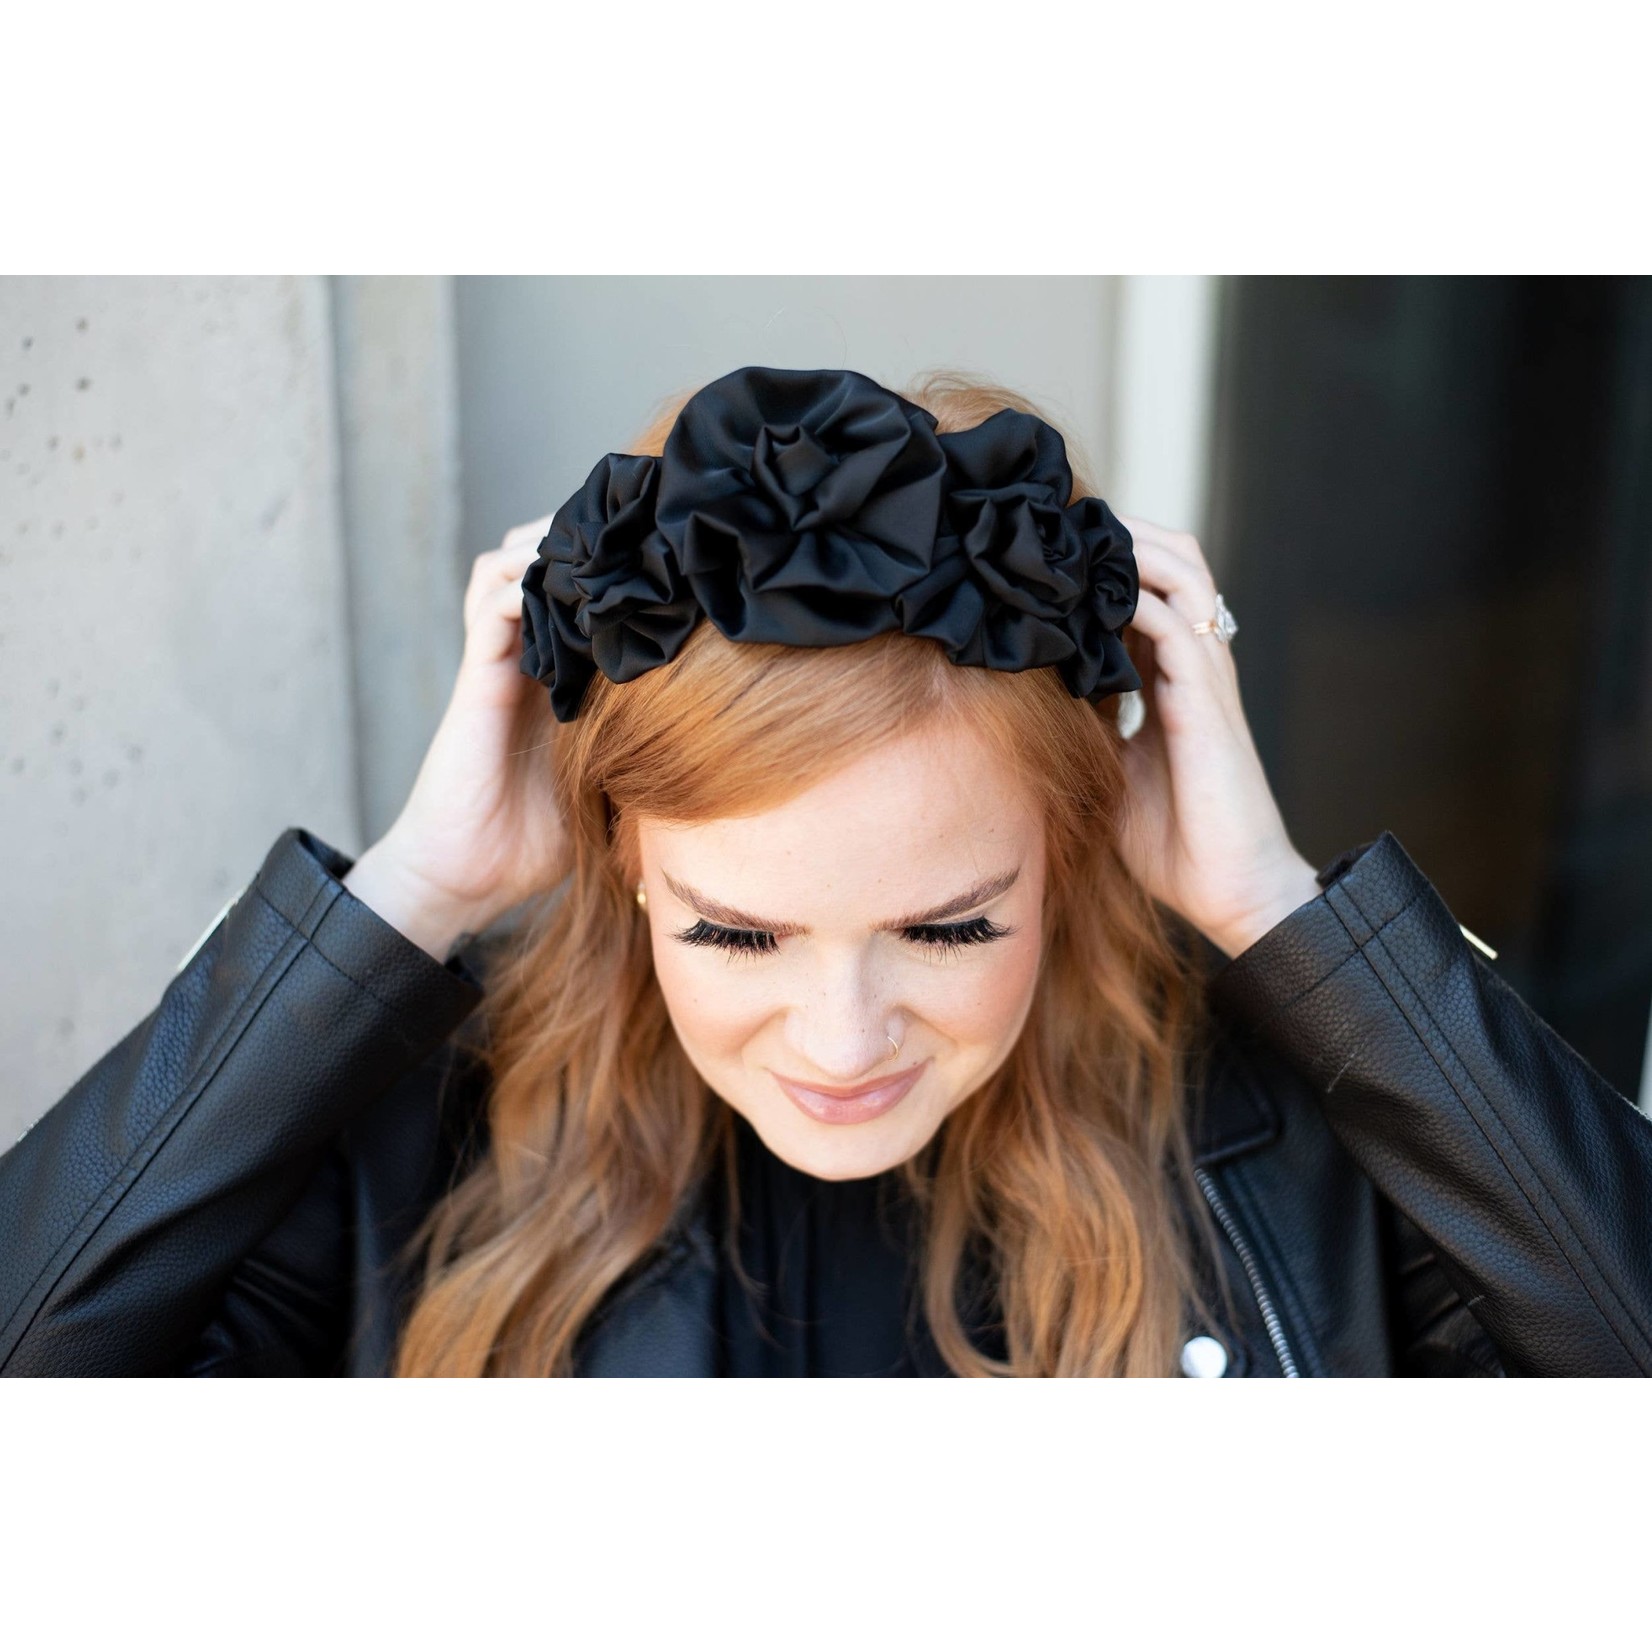 Rosette Headband in Black